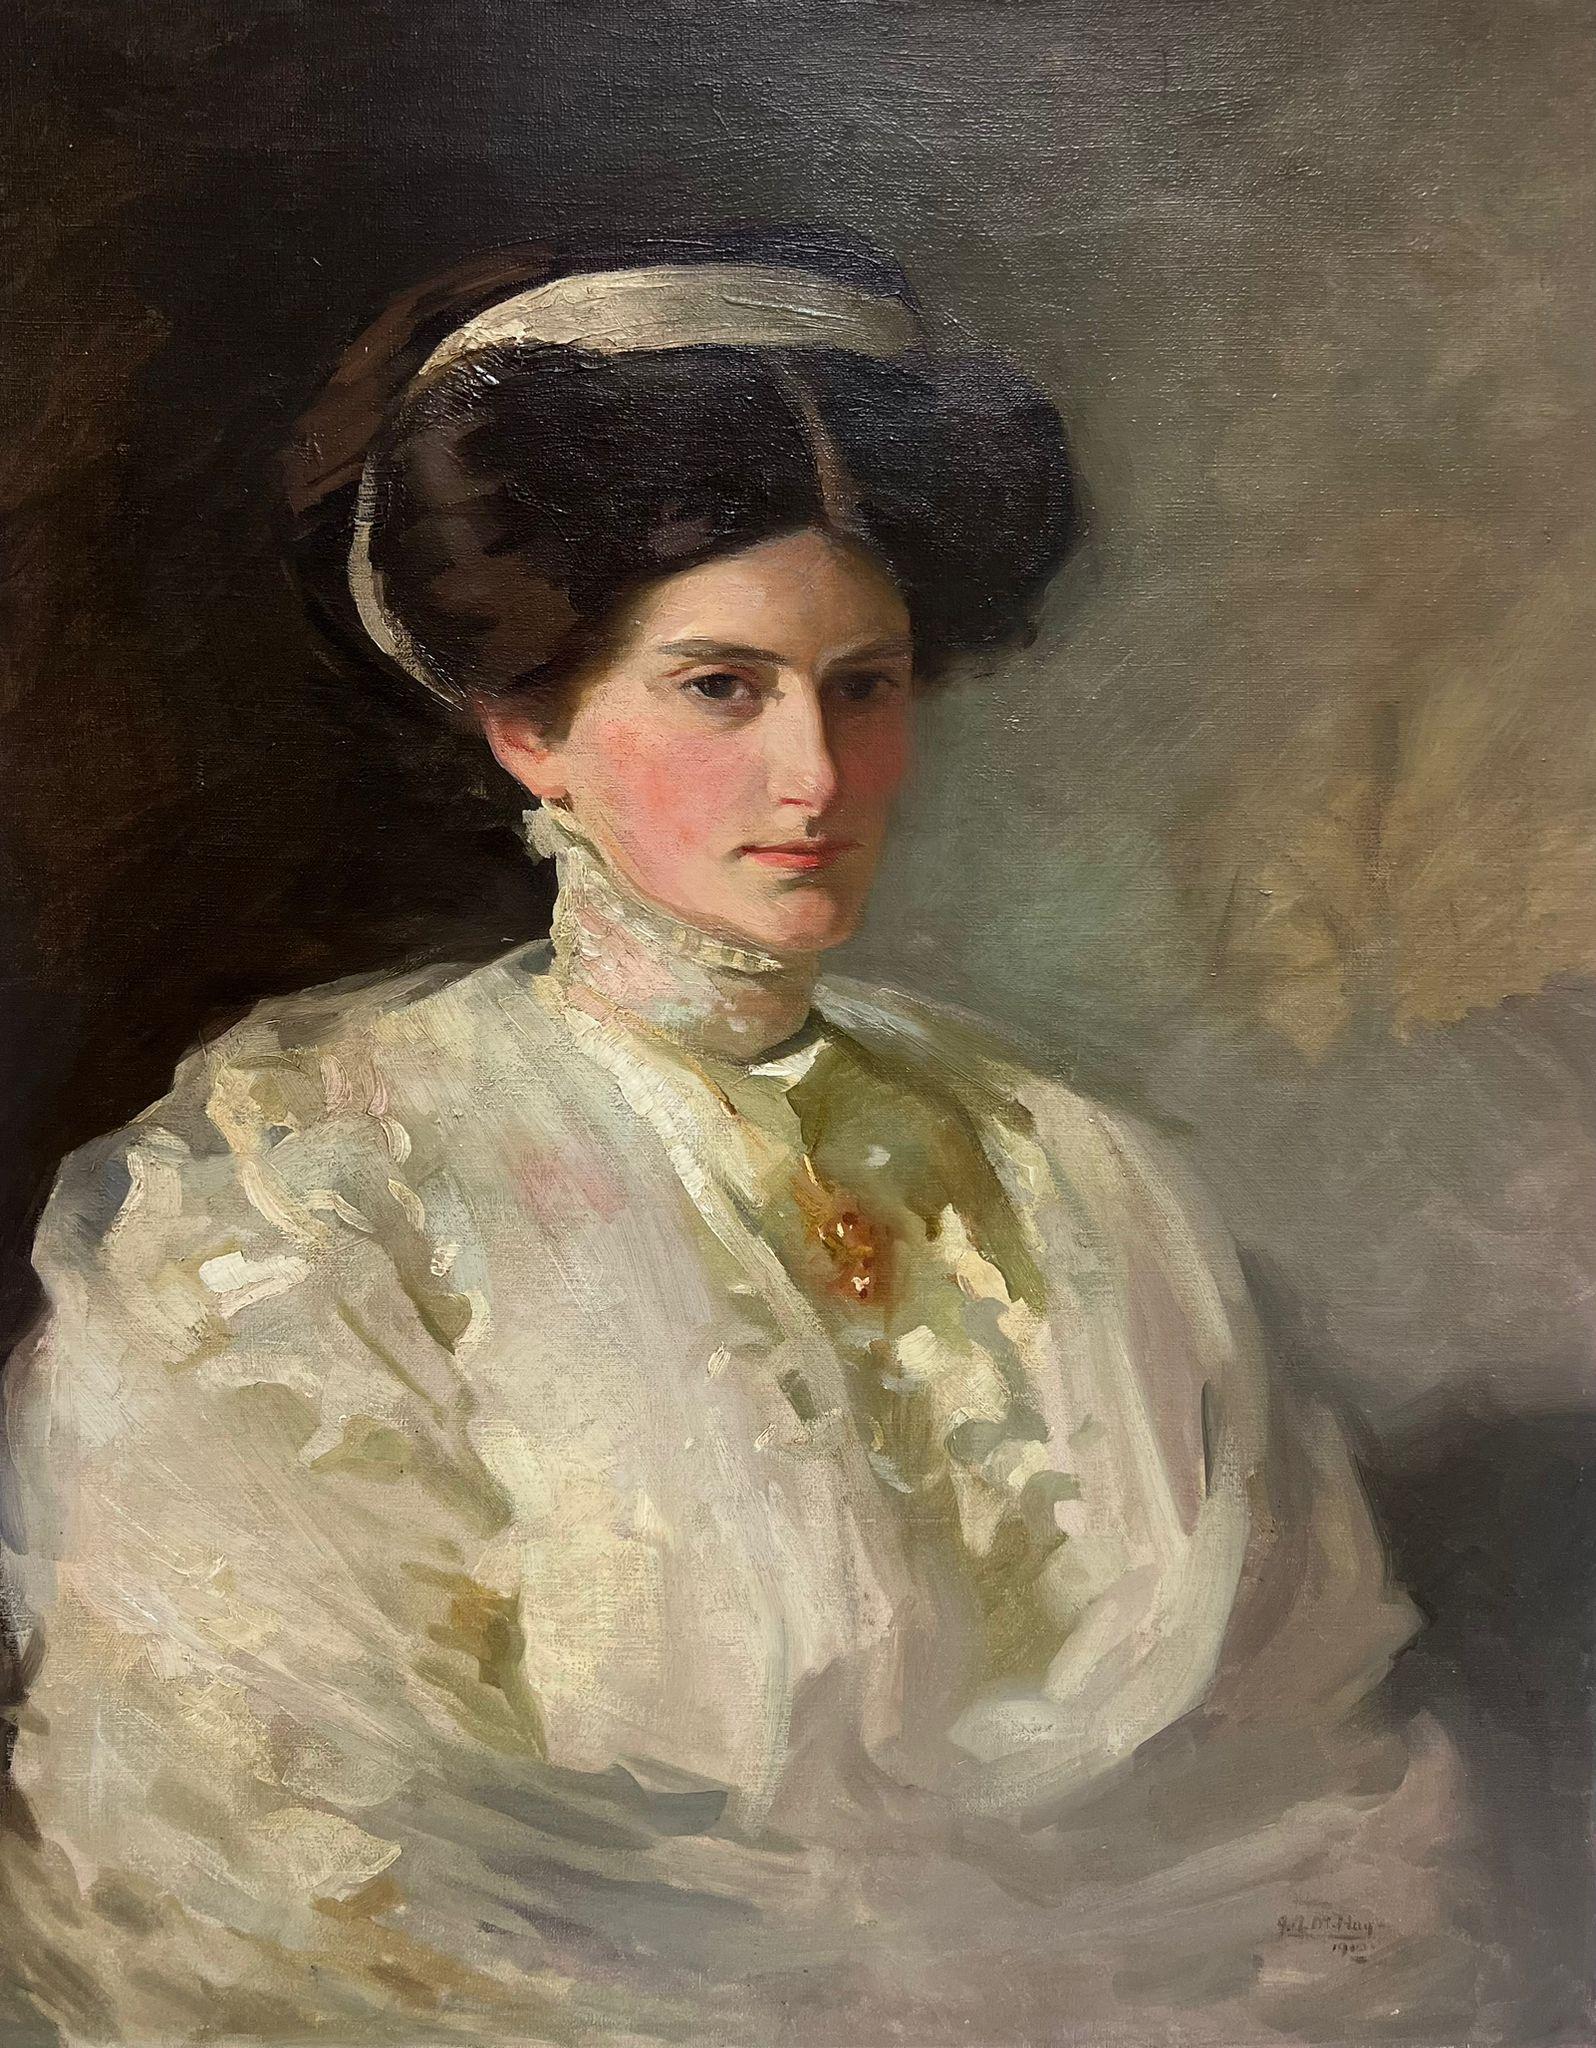 John Arthur Machray Hay (1887-1960) Portrait Painting – Fine Edwardian British Society, Porträt einer eleganten Dame, signiertes Ölgemälde, Edwardian British Society